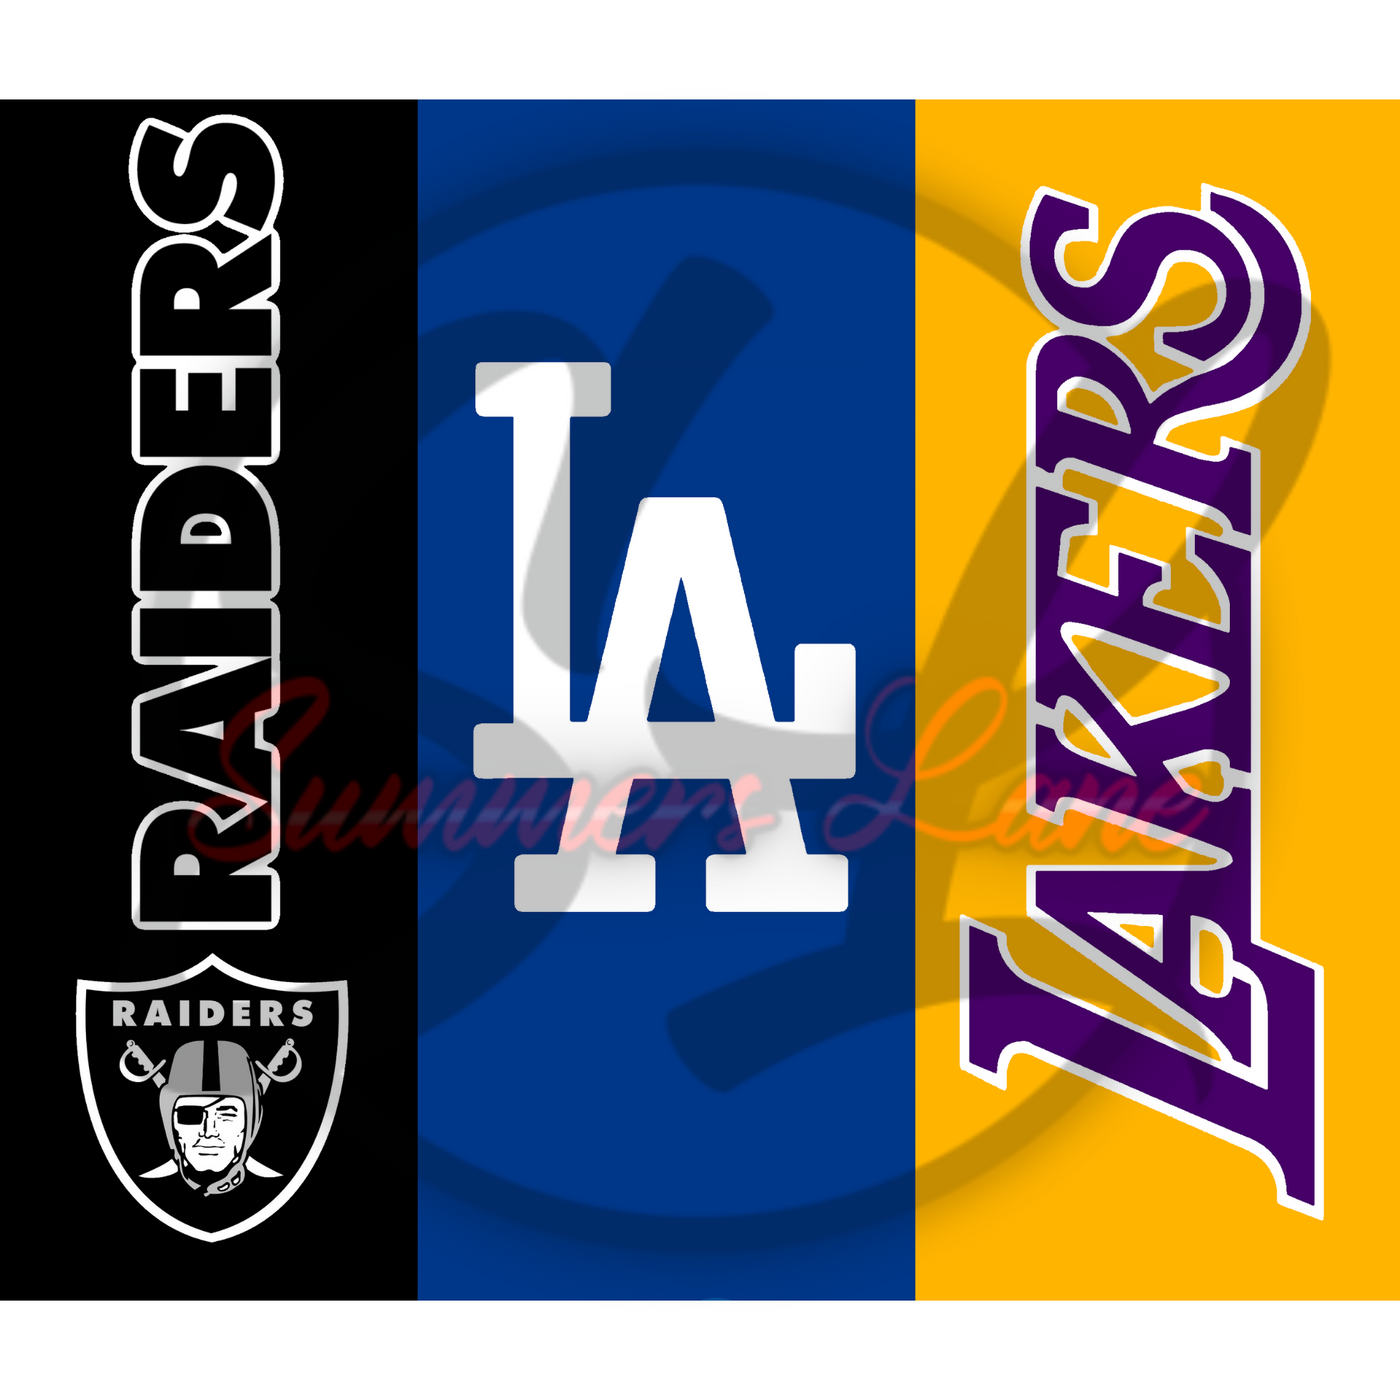 LA Kings wearing LA Dodgers